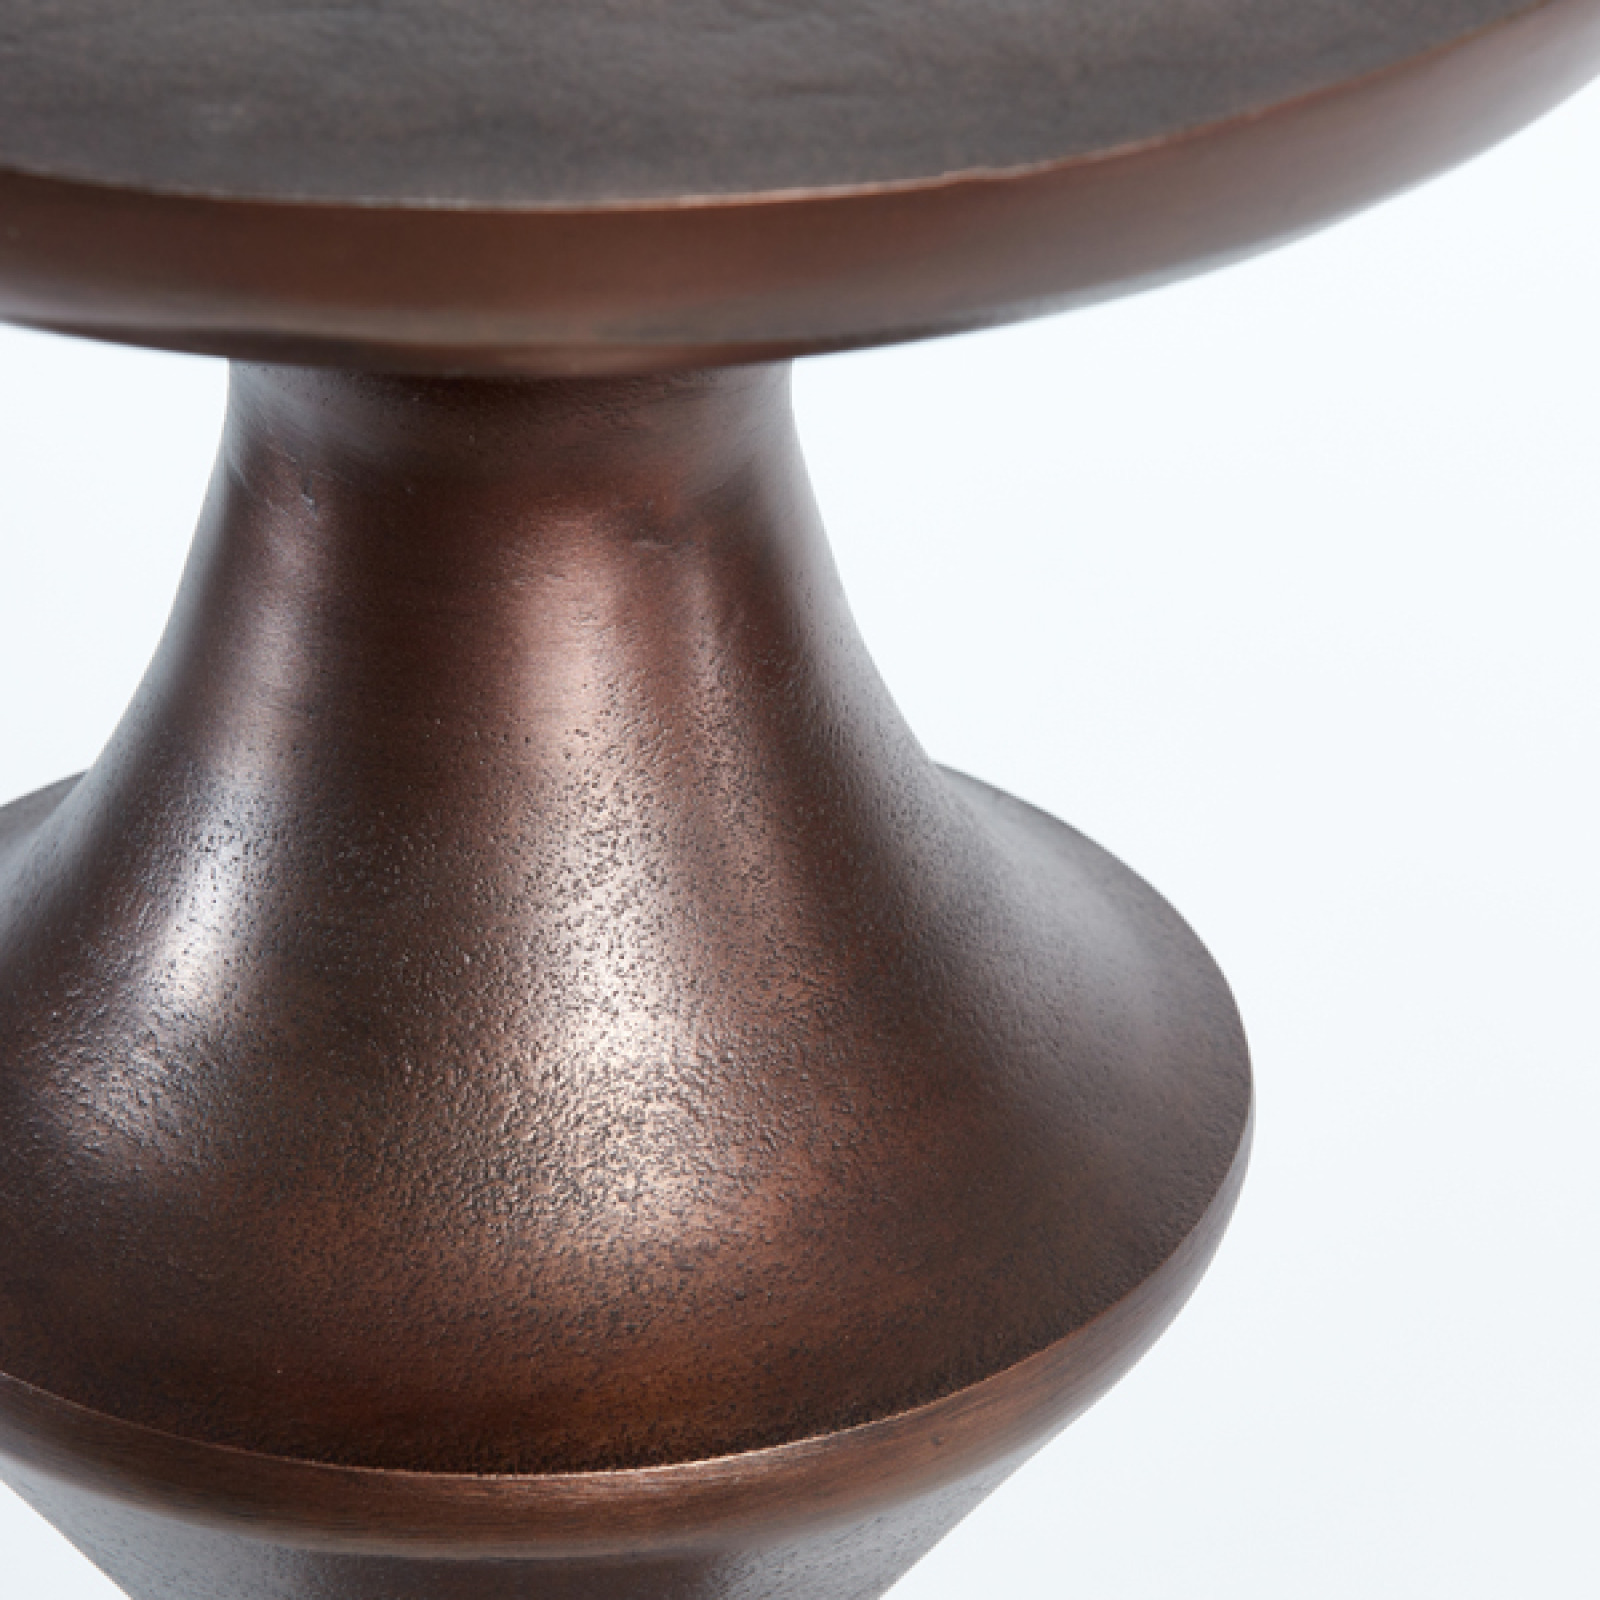 Loboc antique copper side table